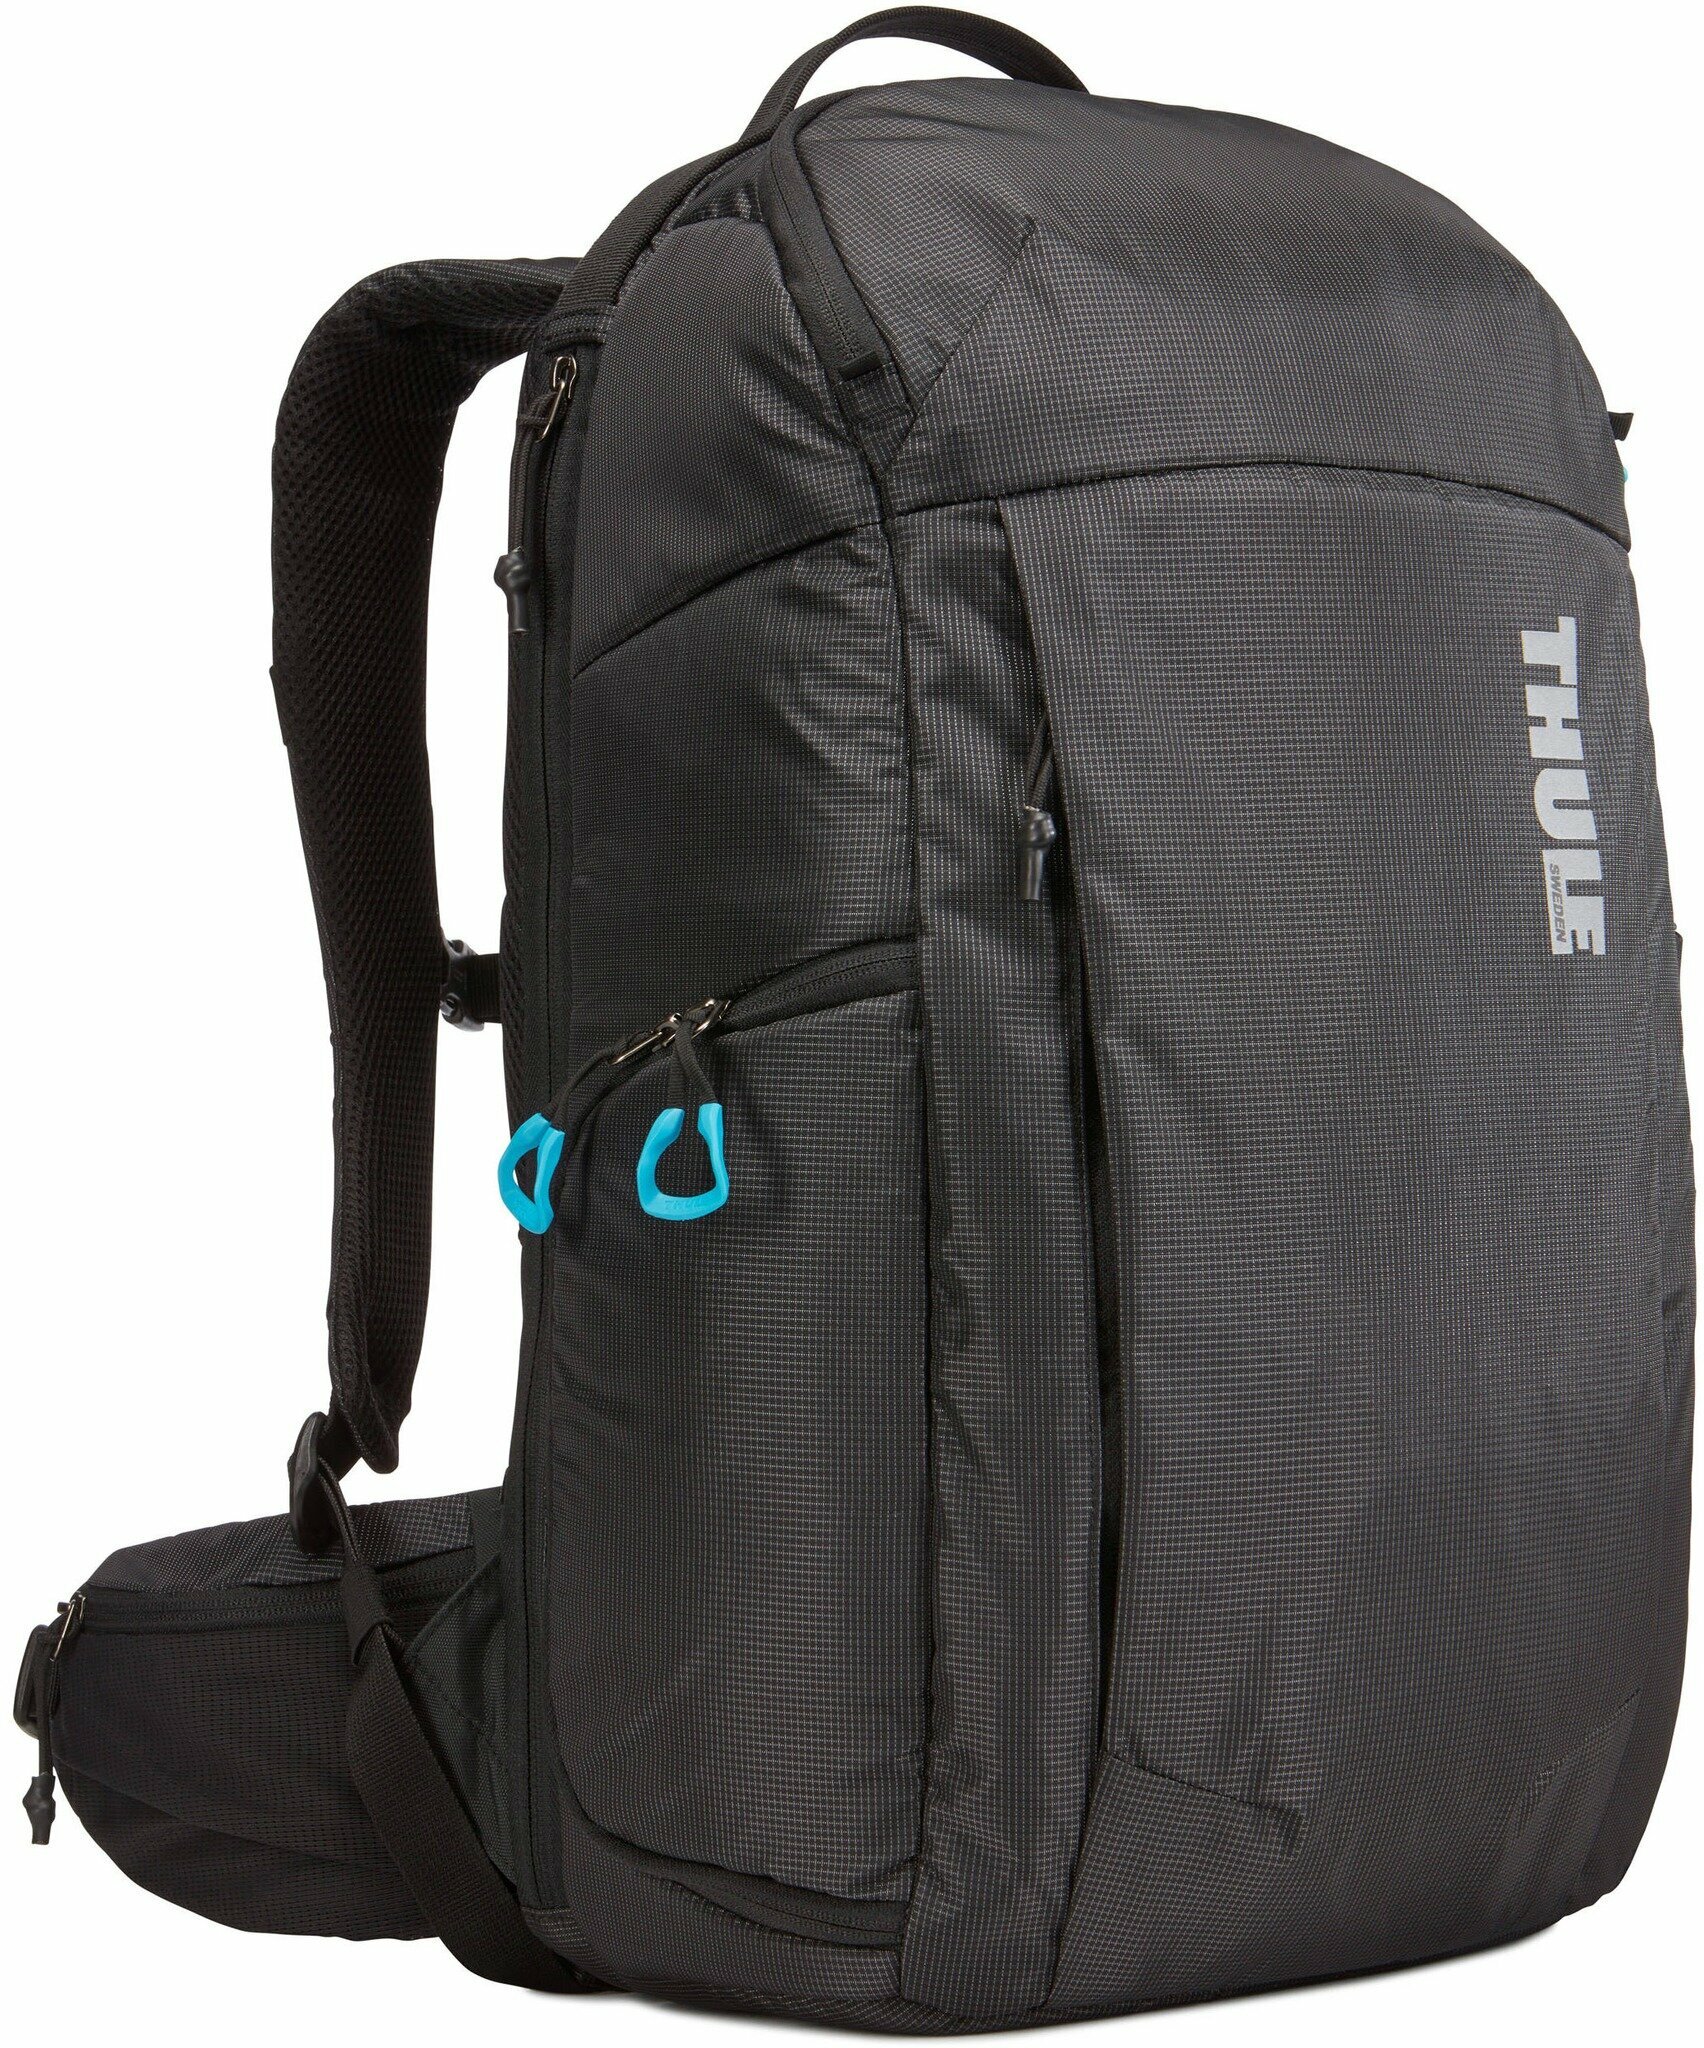 Рюкзак для фотокамеры THULE Aspect DSLR Backpack TAC-106 серый